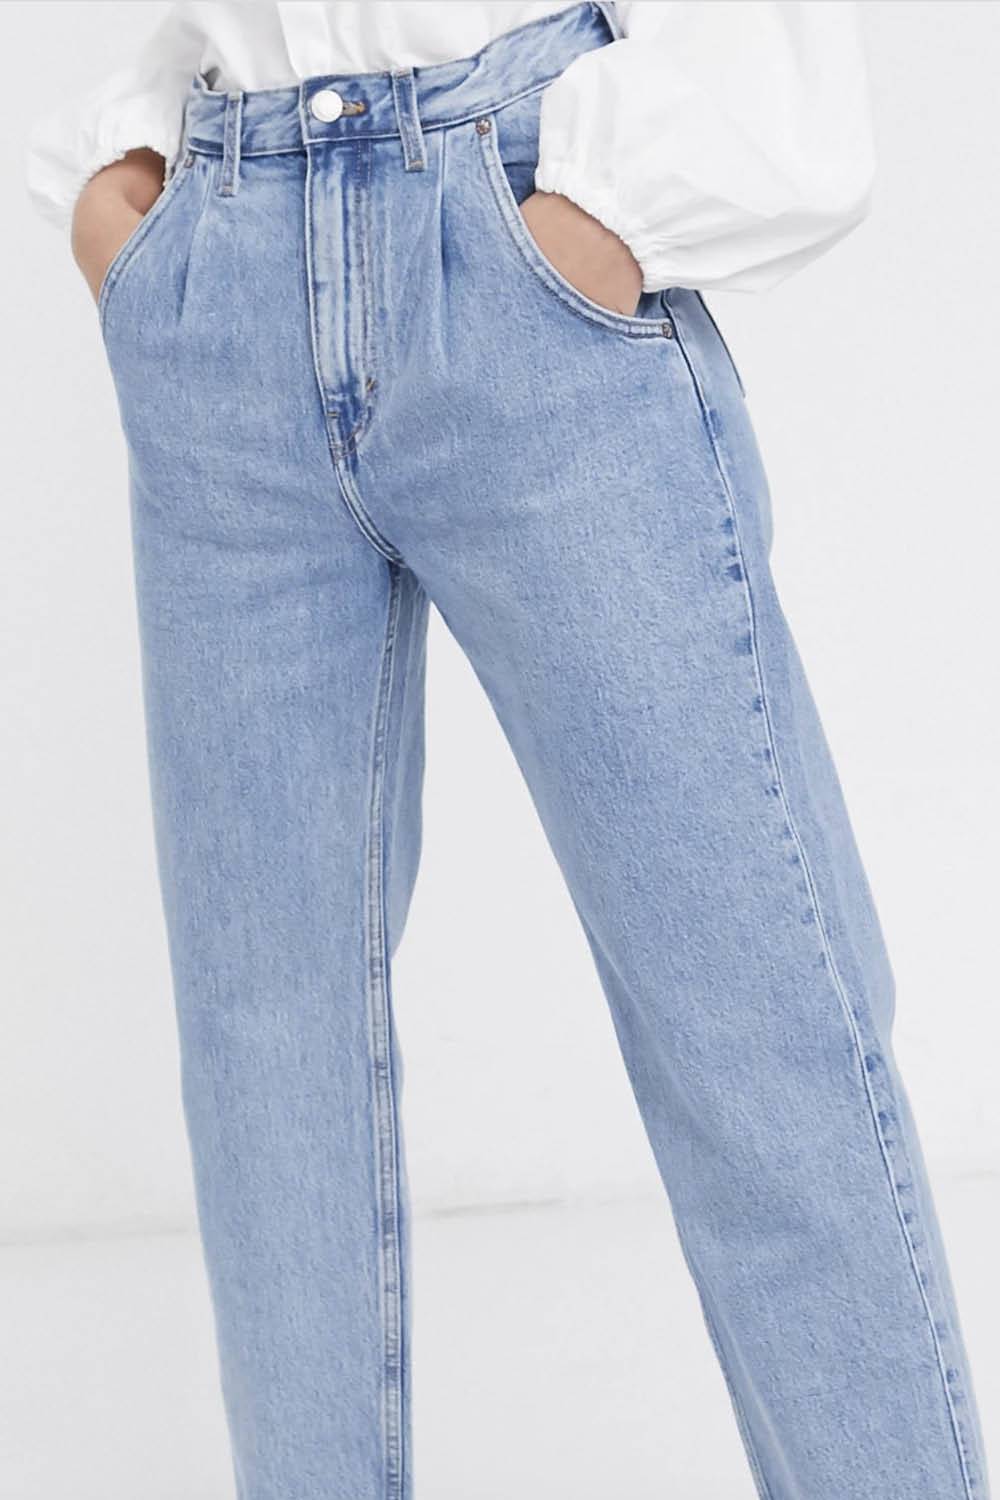 Grandpa jeans- Asos pinzas